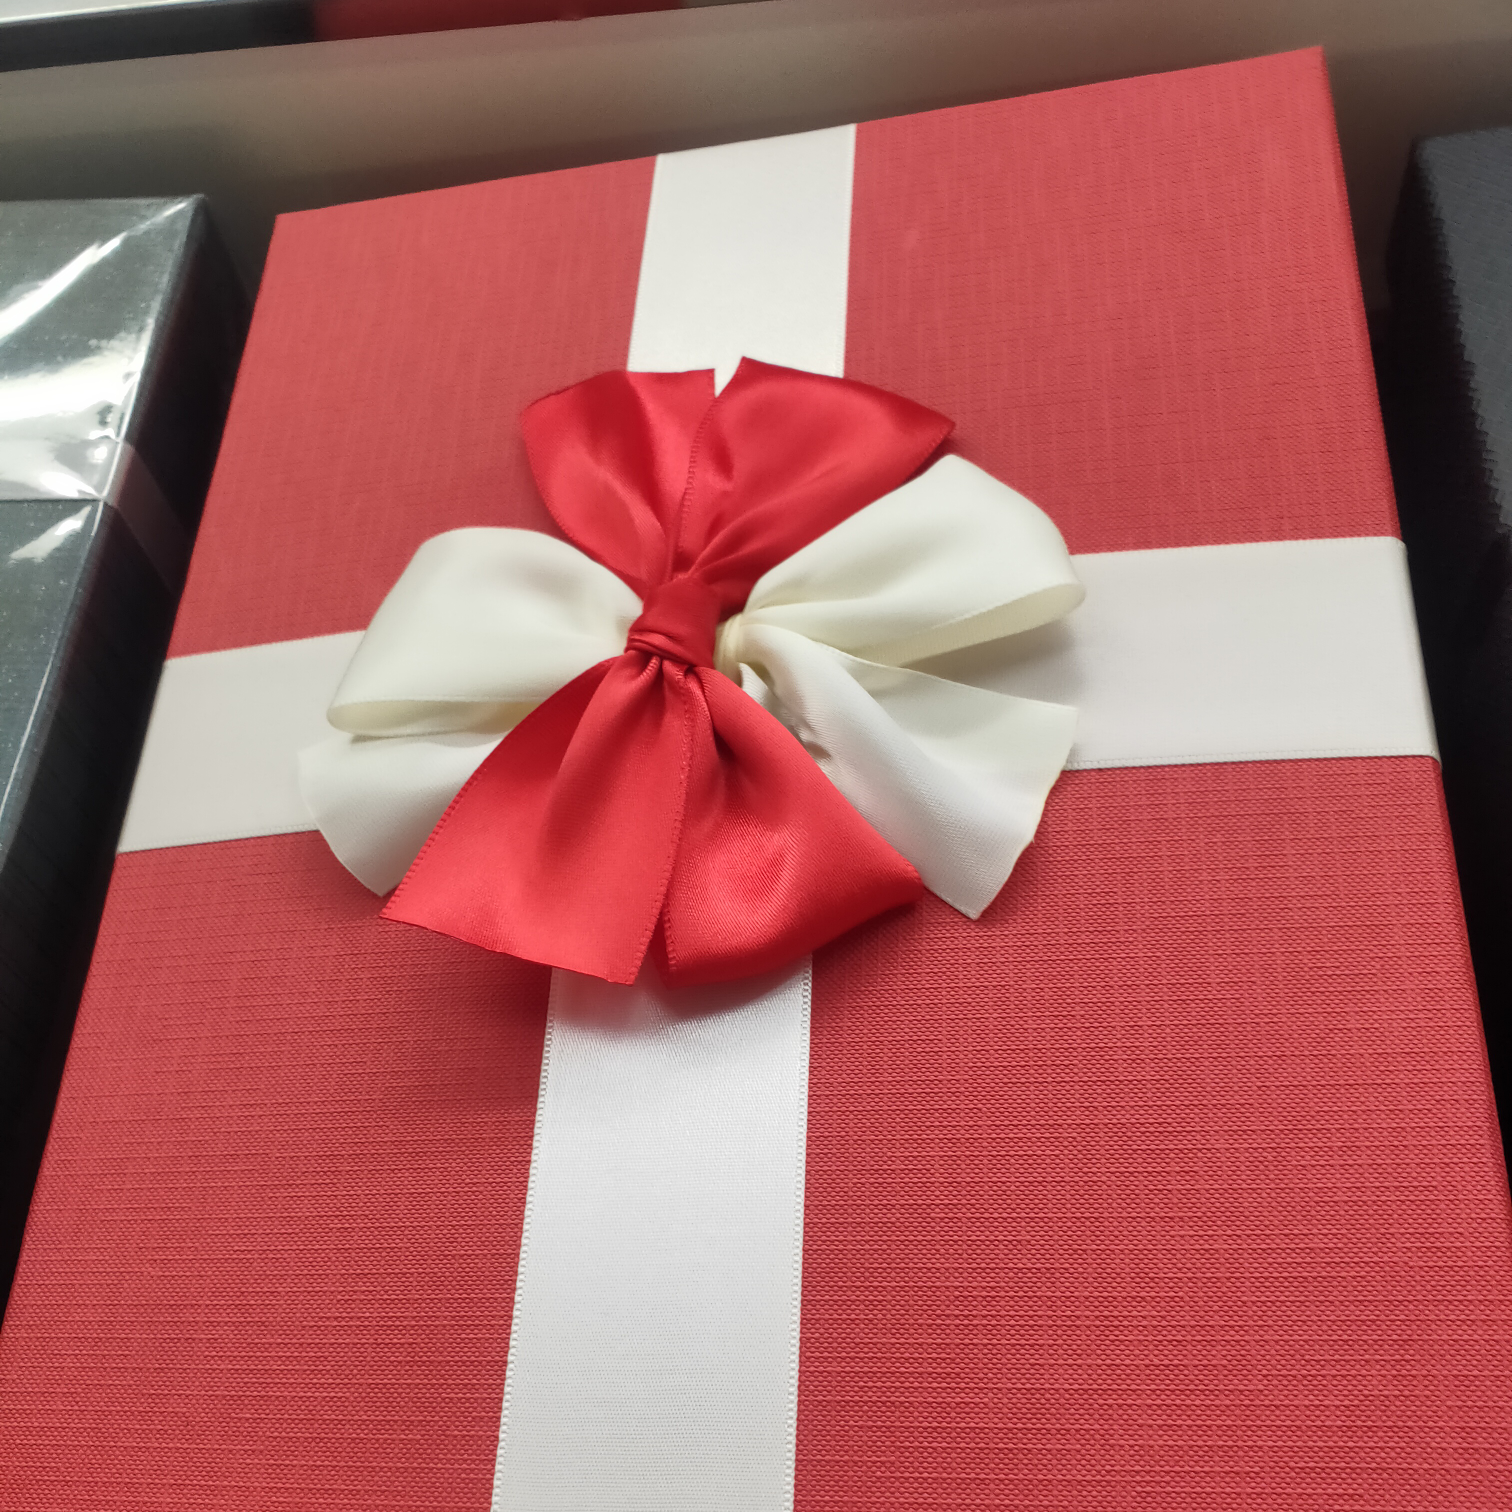 工艺礼品创意礼品礼品盒包装盒浪漫礼品礼物包装纸盒982